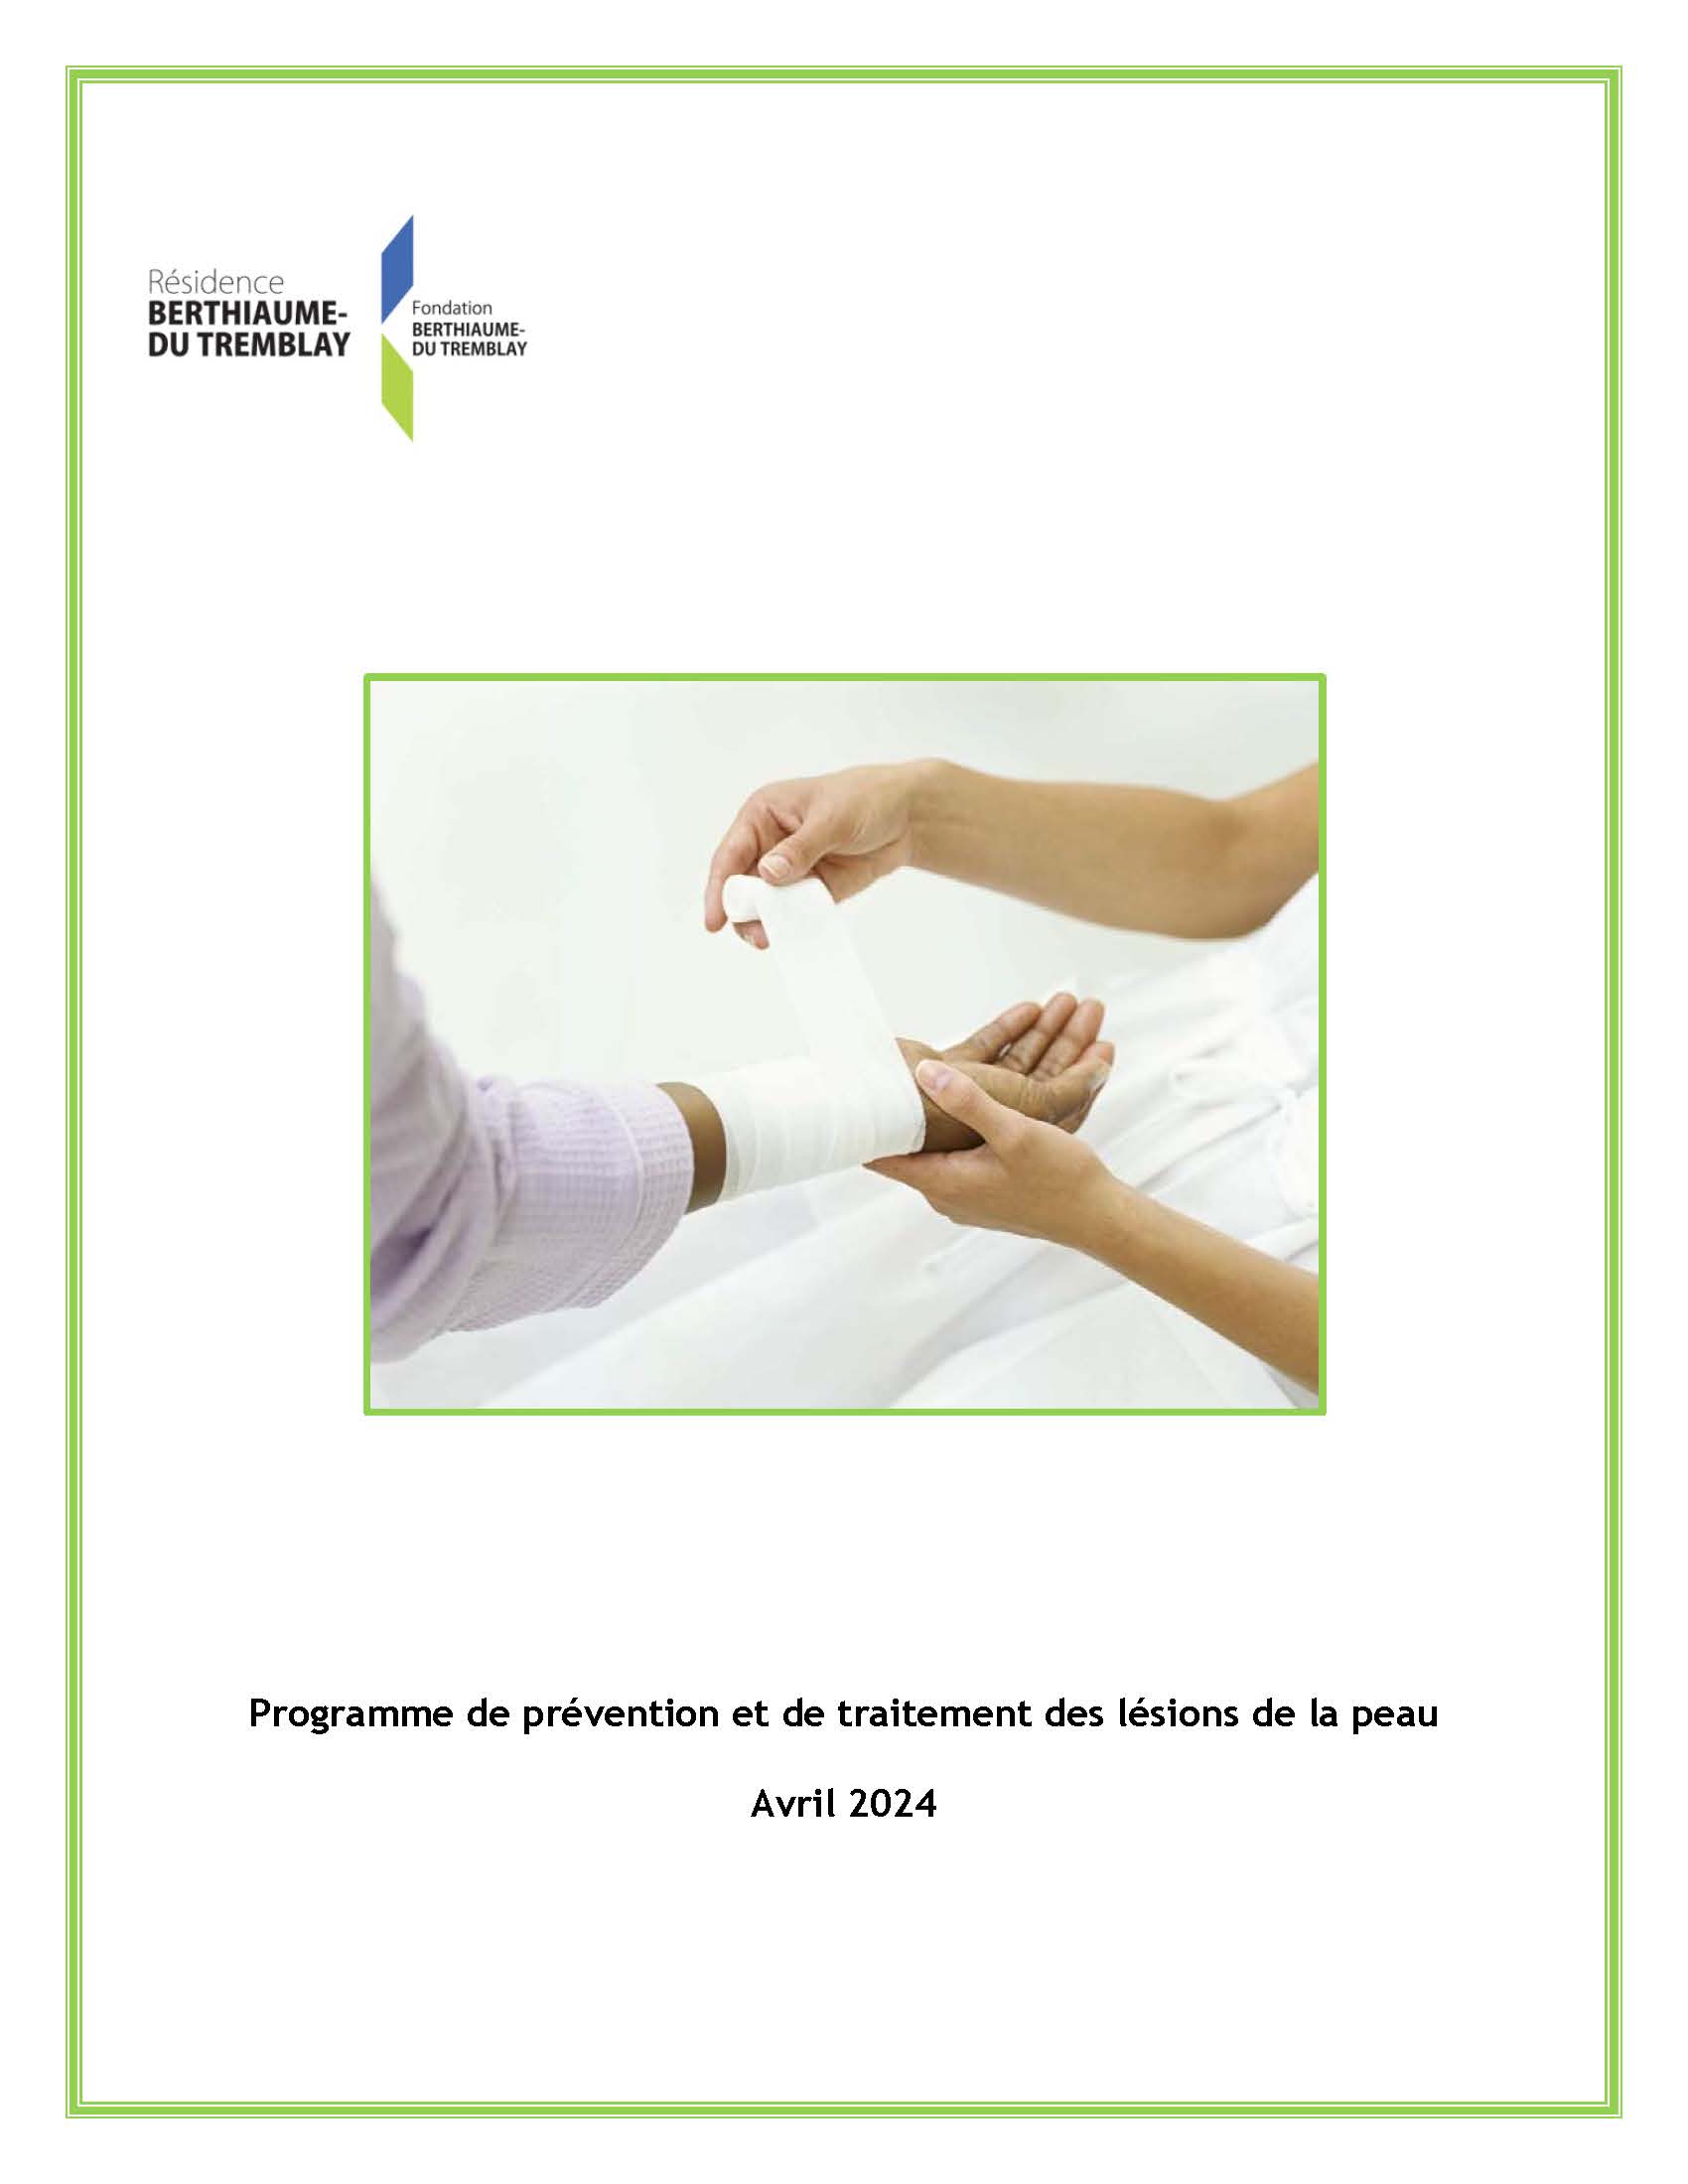 Programme de prévention et de traitement des lésions de la peau Résidence Berthiaume-Du Tremblay